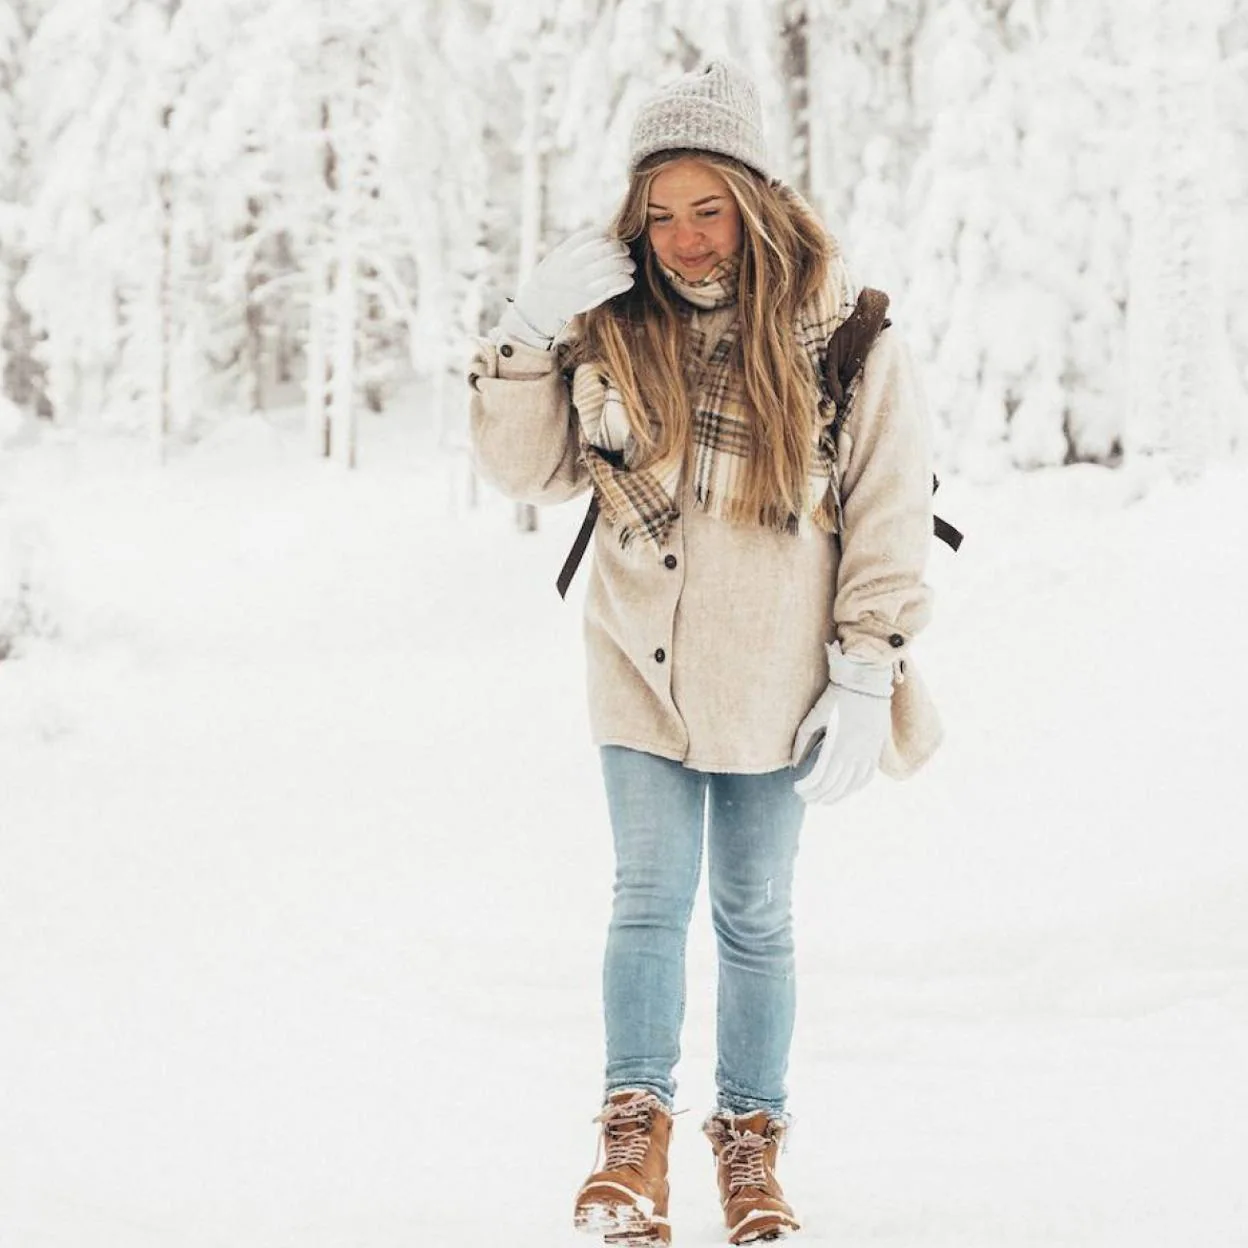 Parkas, chaquetas, pantalones… Los básicos que necesitas para cómoda y no pasar frío este invierno los encontrarás en Decathlon | Mujer Hoy